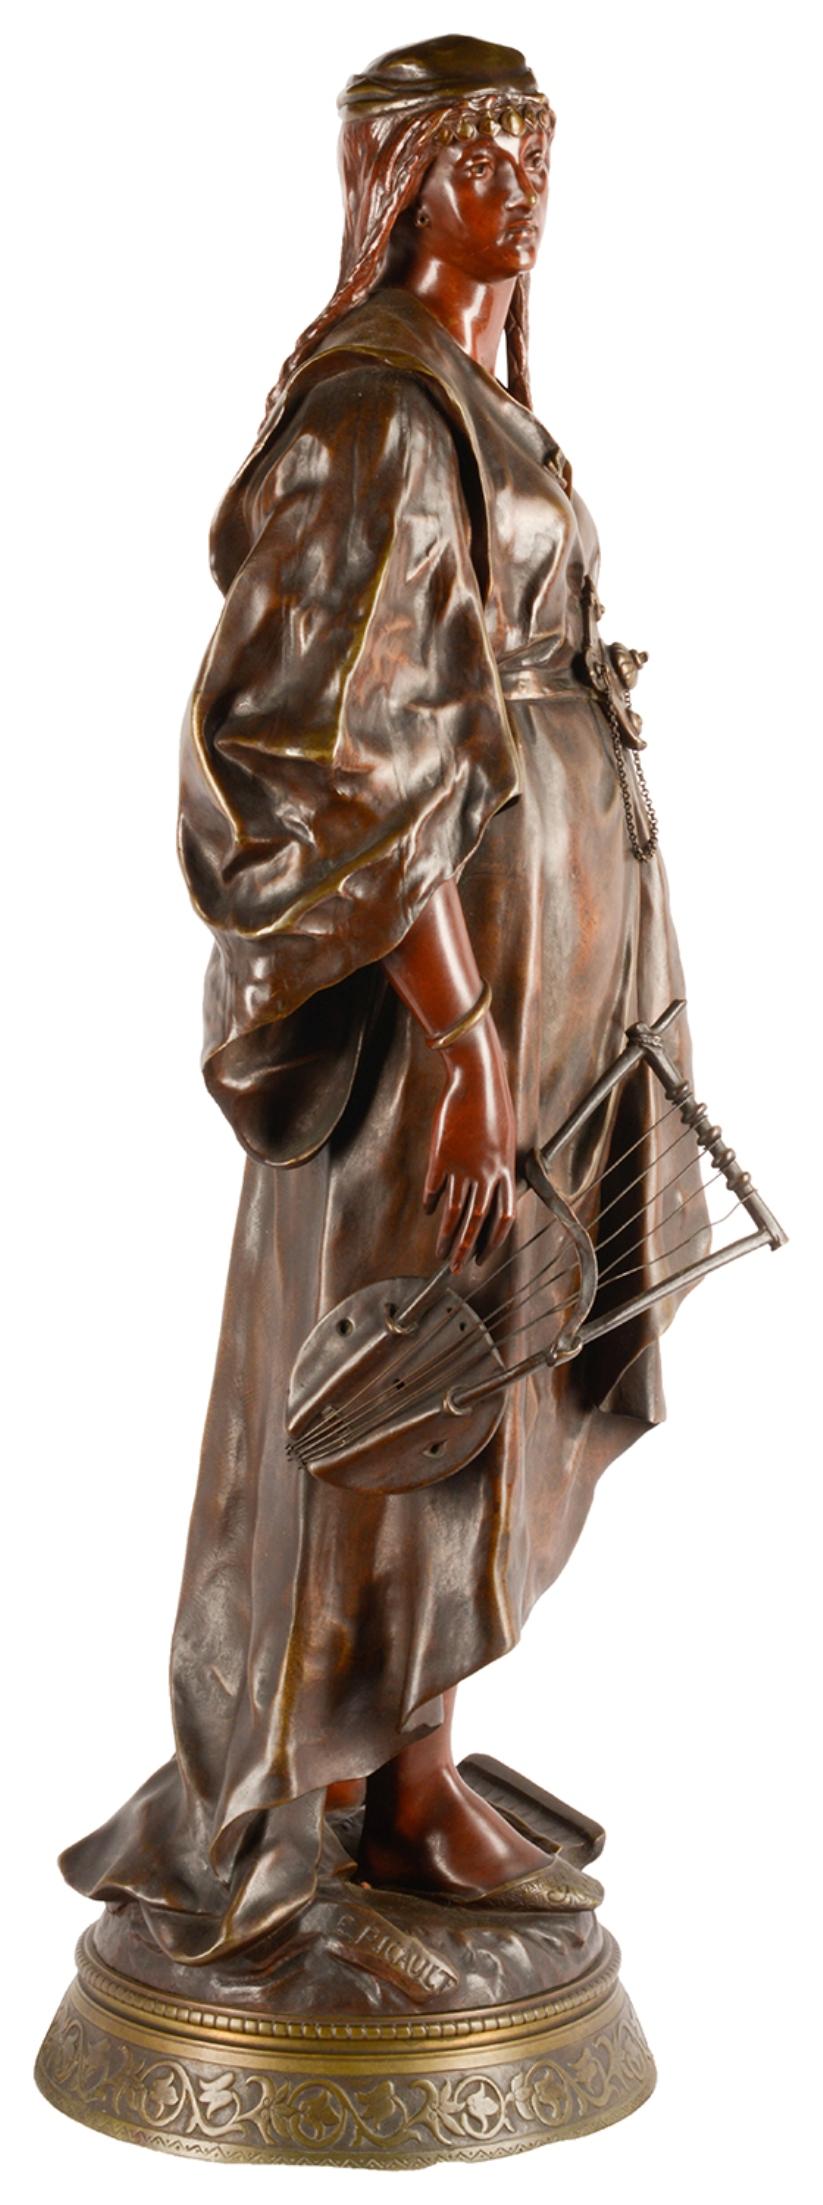 Emile-Louis Picault, grande figure de la reine Esther en bronze patiné de style oriental français, vers 1870.

Une figurine en bronze de belle qualité et au sujet rare représentant une jeune femme 